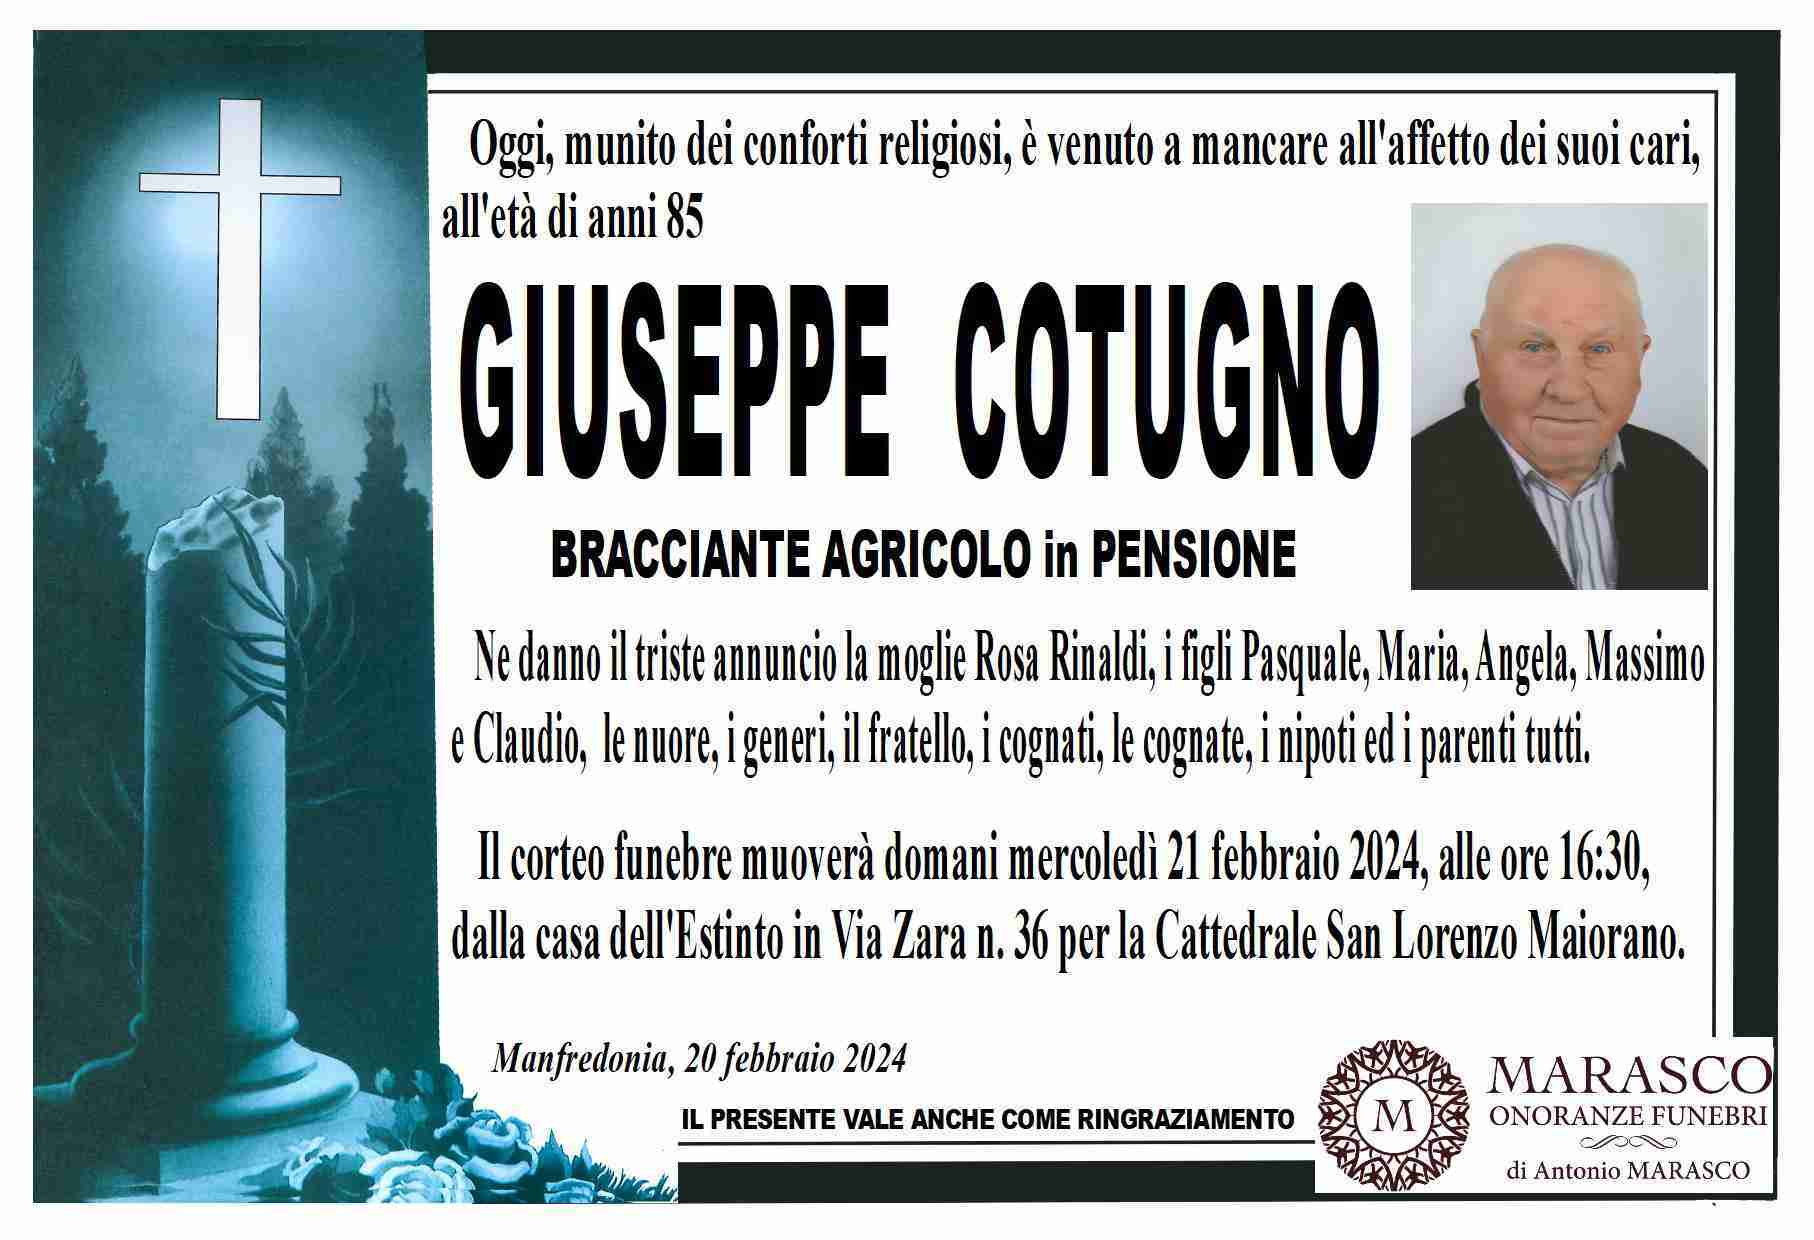 Giuseppe Cotugno